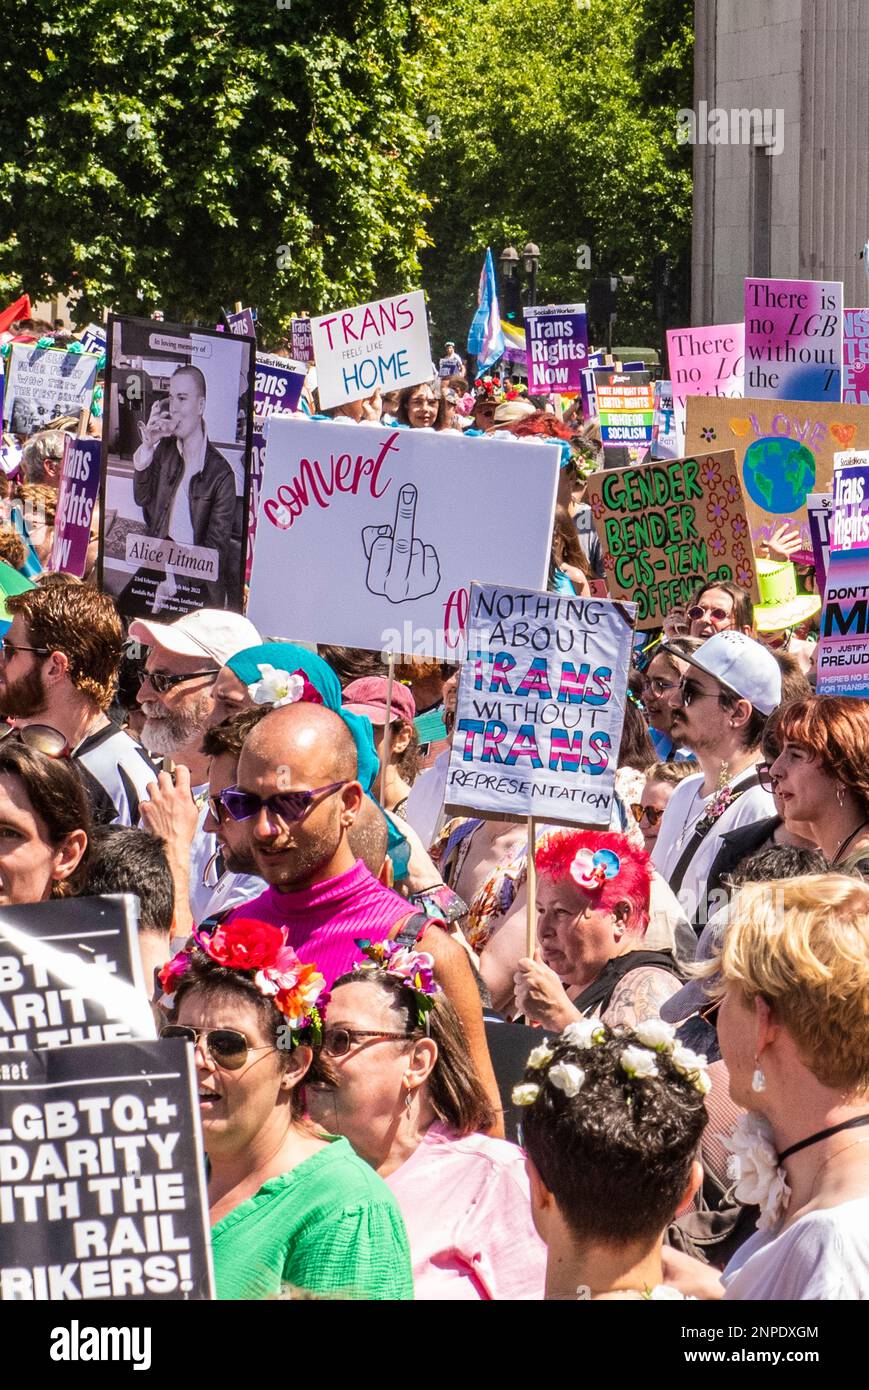 Un grand nombre de personnes se sont rassemblées dans le centre de Londres pour protester contre le manque de droits et de soins de santé pour les personnes transgenres avec de grandes bannières, dont celle qui donne le doigt à la thérapie de conversion. Banque D'Images